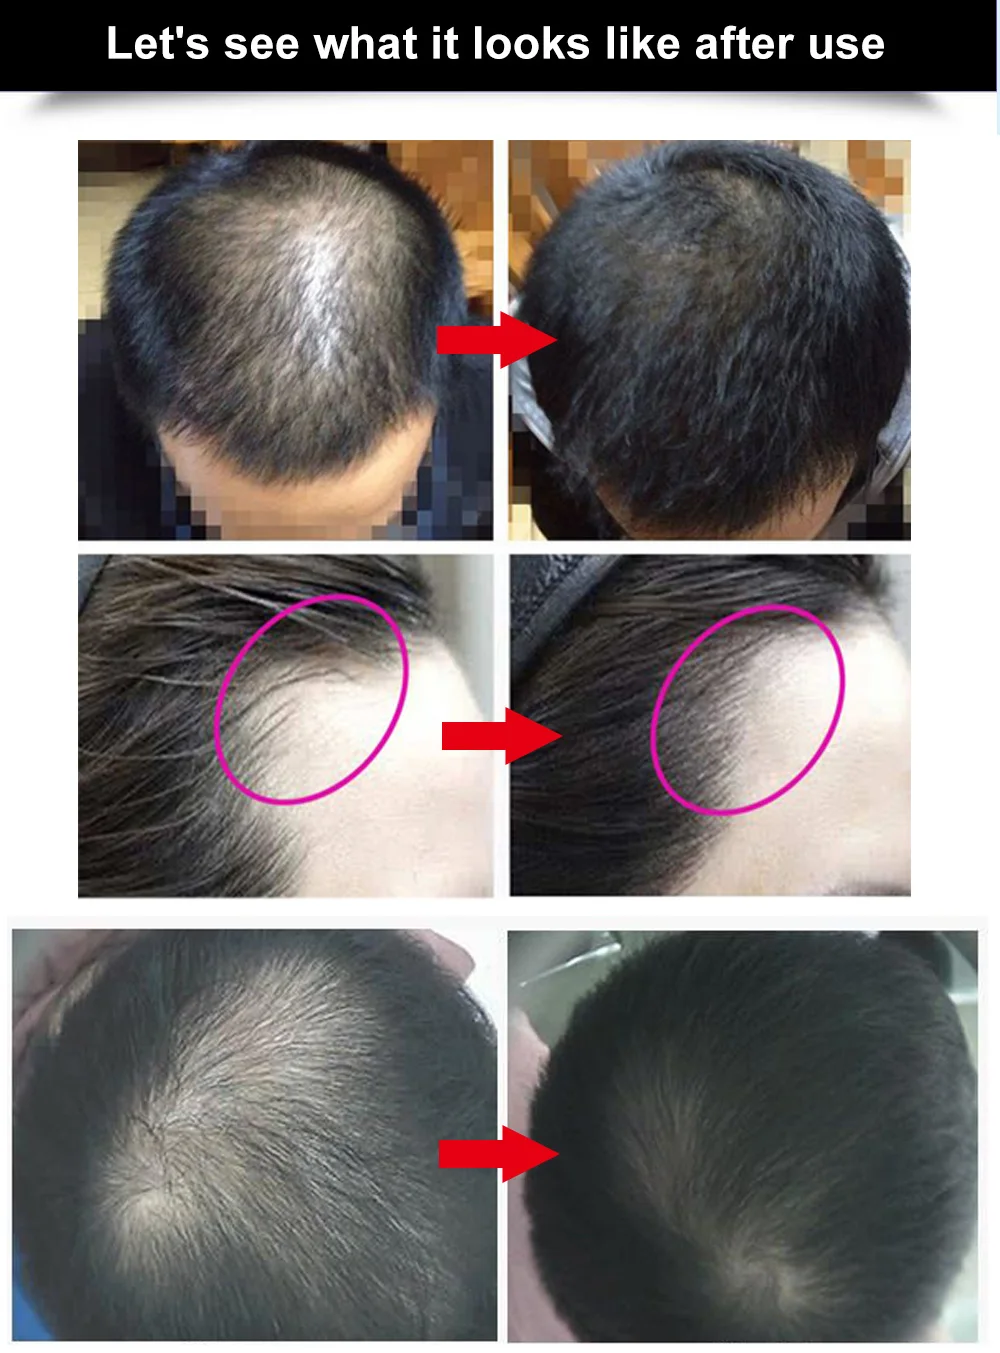 AMEIZII 20 мл эссенция для роста волос продукты для выпадения волос эфирное масло органический натуральный экстракт имбиря плотный Уход за волосами Сыворотка для роста